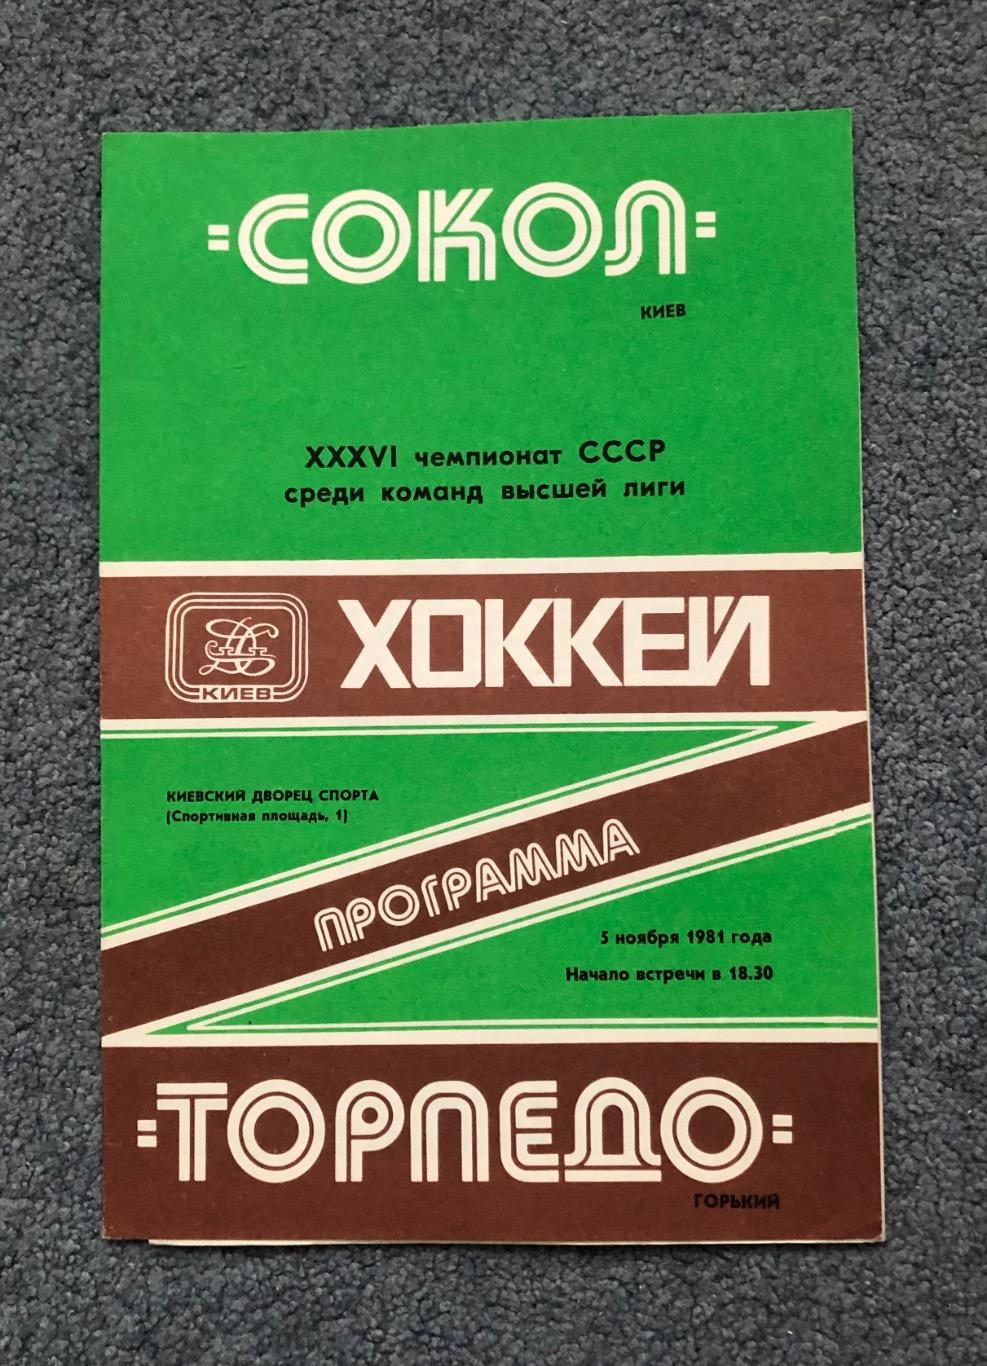 Сокол Киев - Торпедо Горький, 05.11.1981